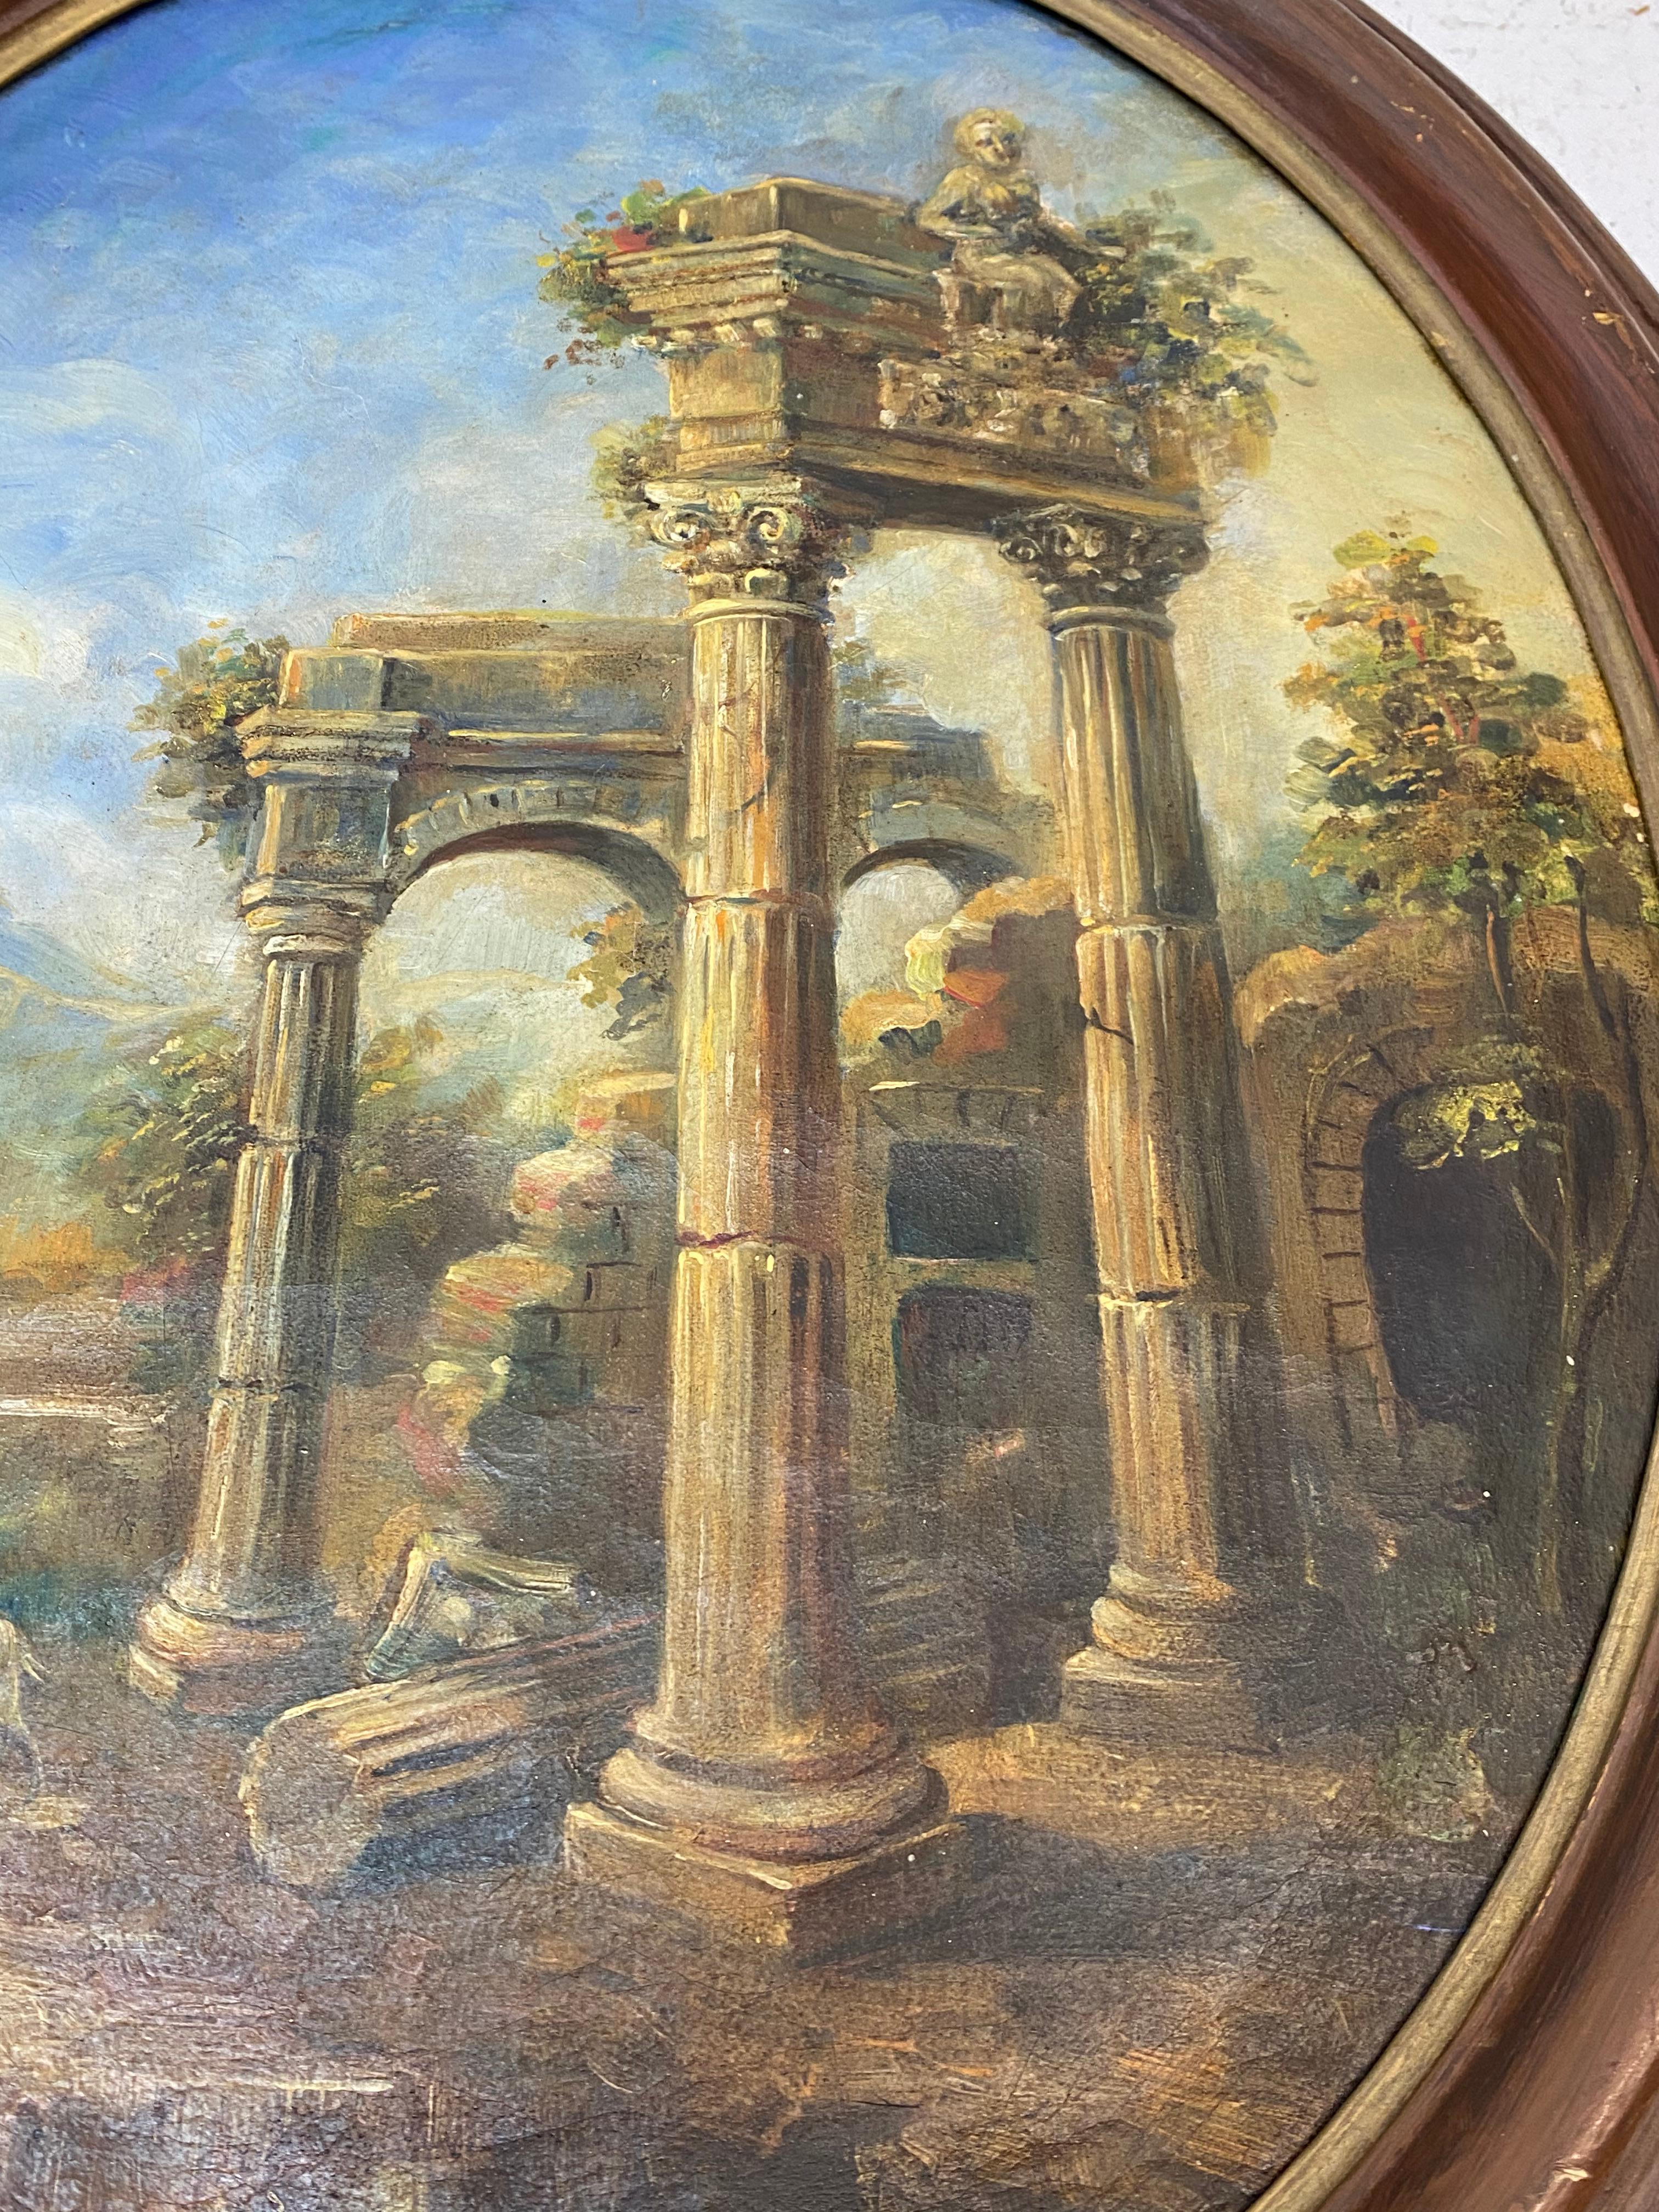 Paire de peintures à l'huile du 19ème siècle représentant un berger et une bergère parmi d'anciennes ruines

Huile originale sur toile ovale

Chaque tableau mesure 16,5